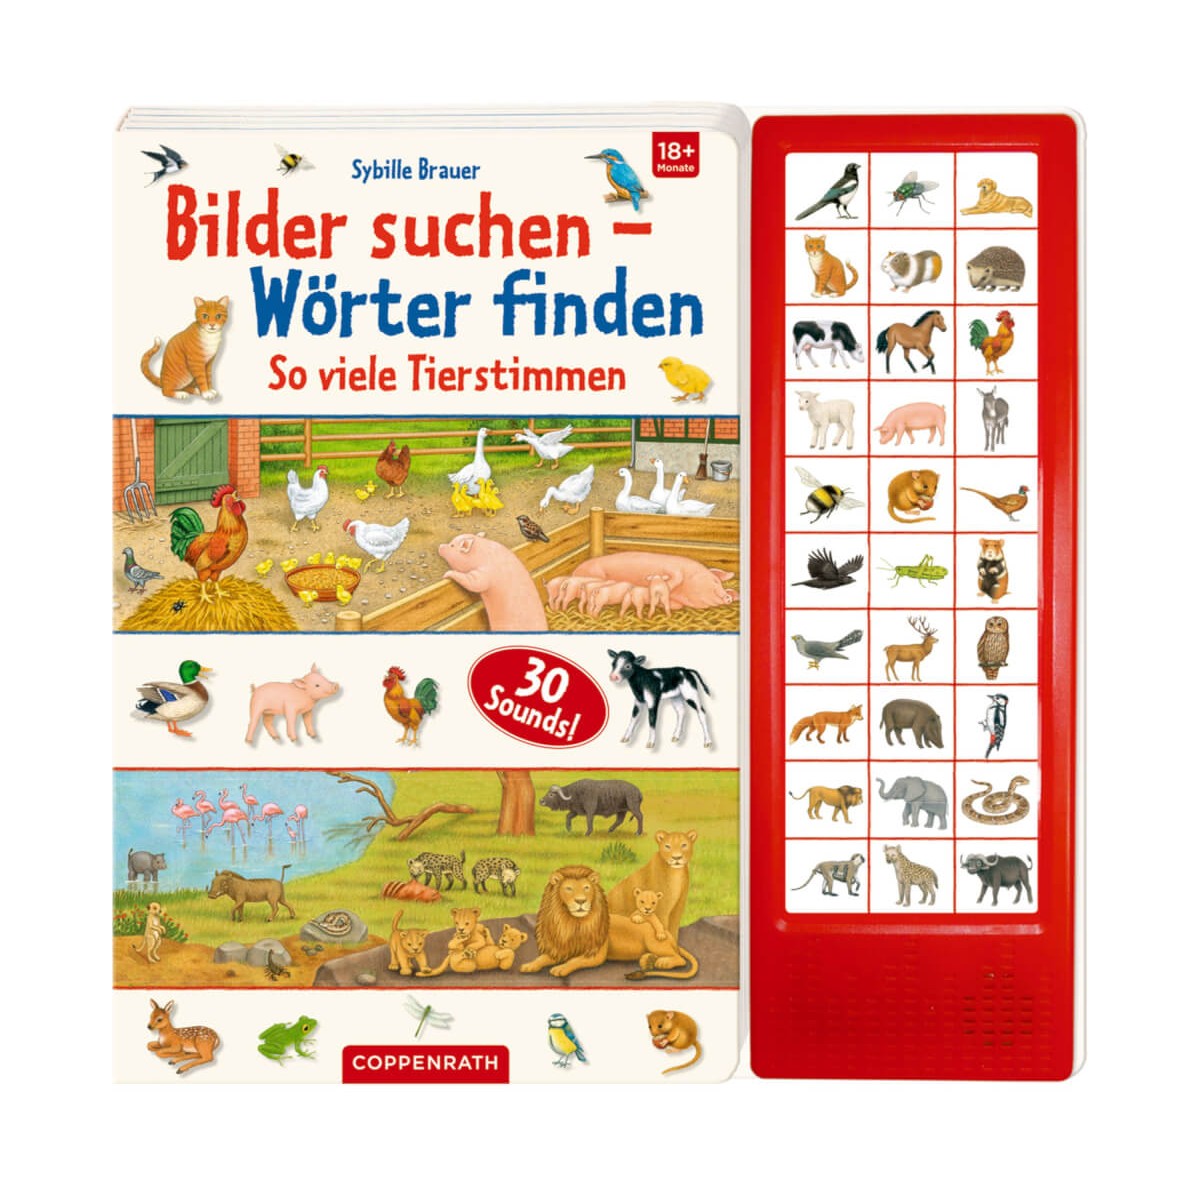 Coppenrath Verlag   Bilder suchen   Wörter finden   So viele Tierstimmen